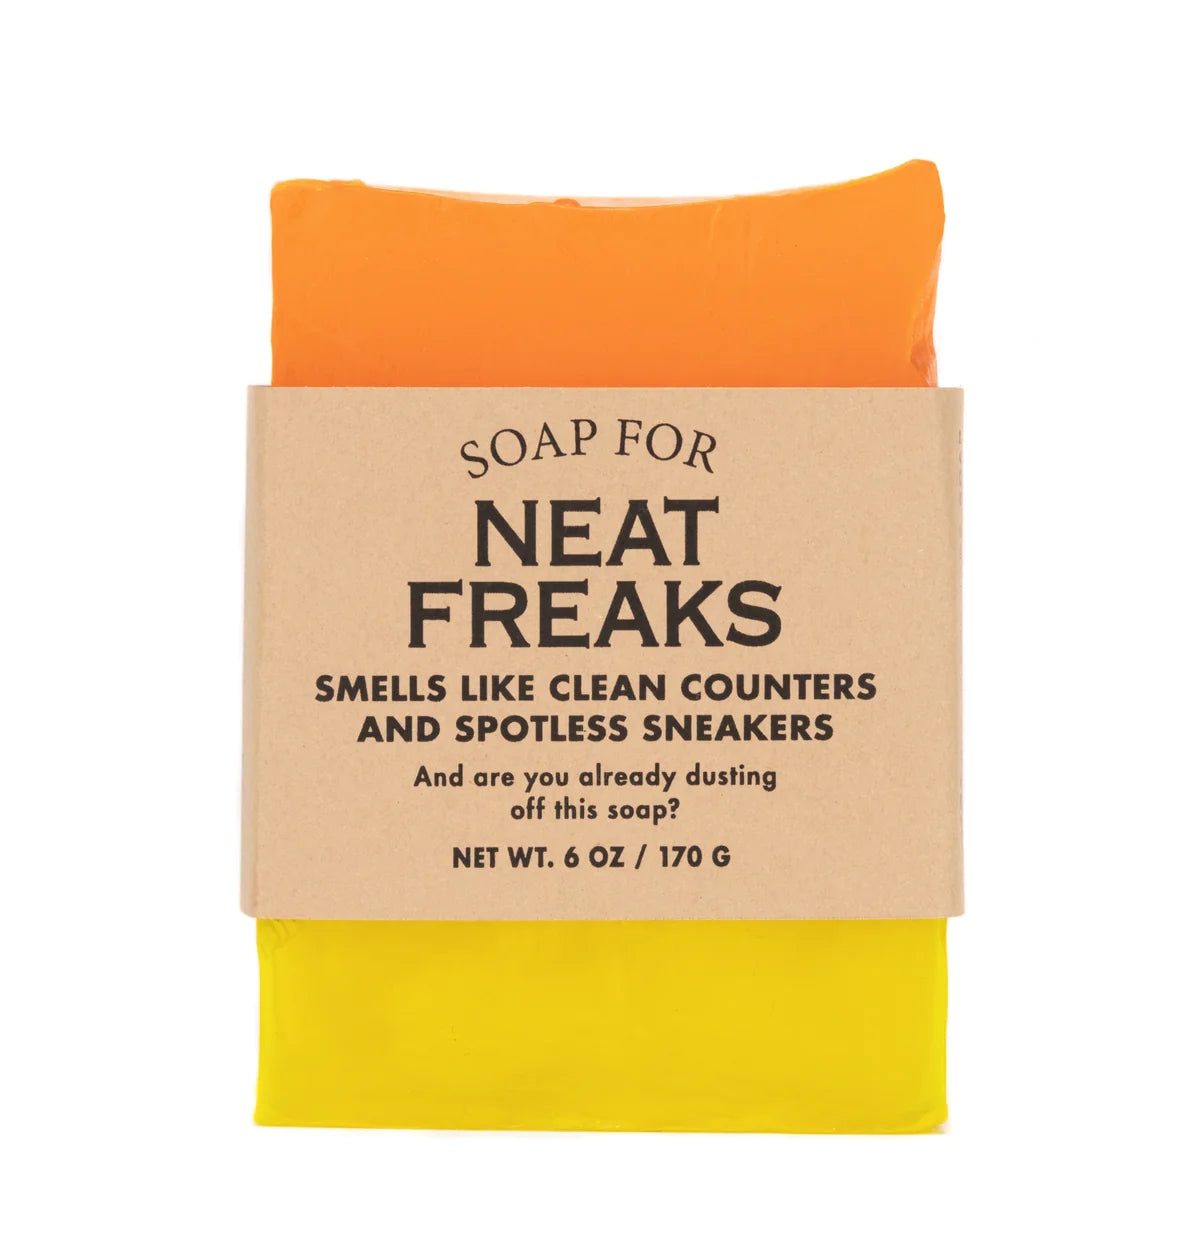 Neat Freaks Soap